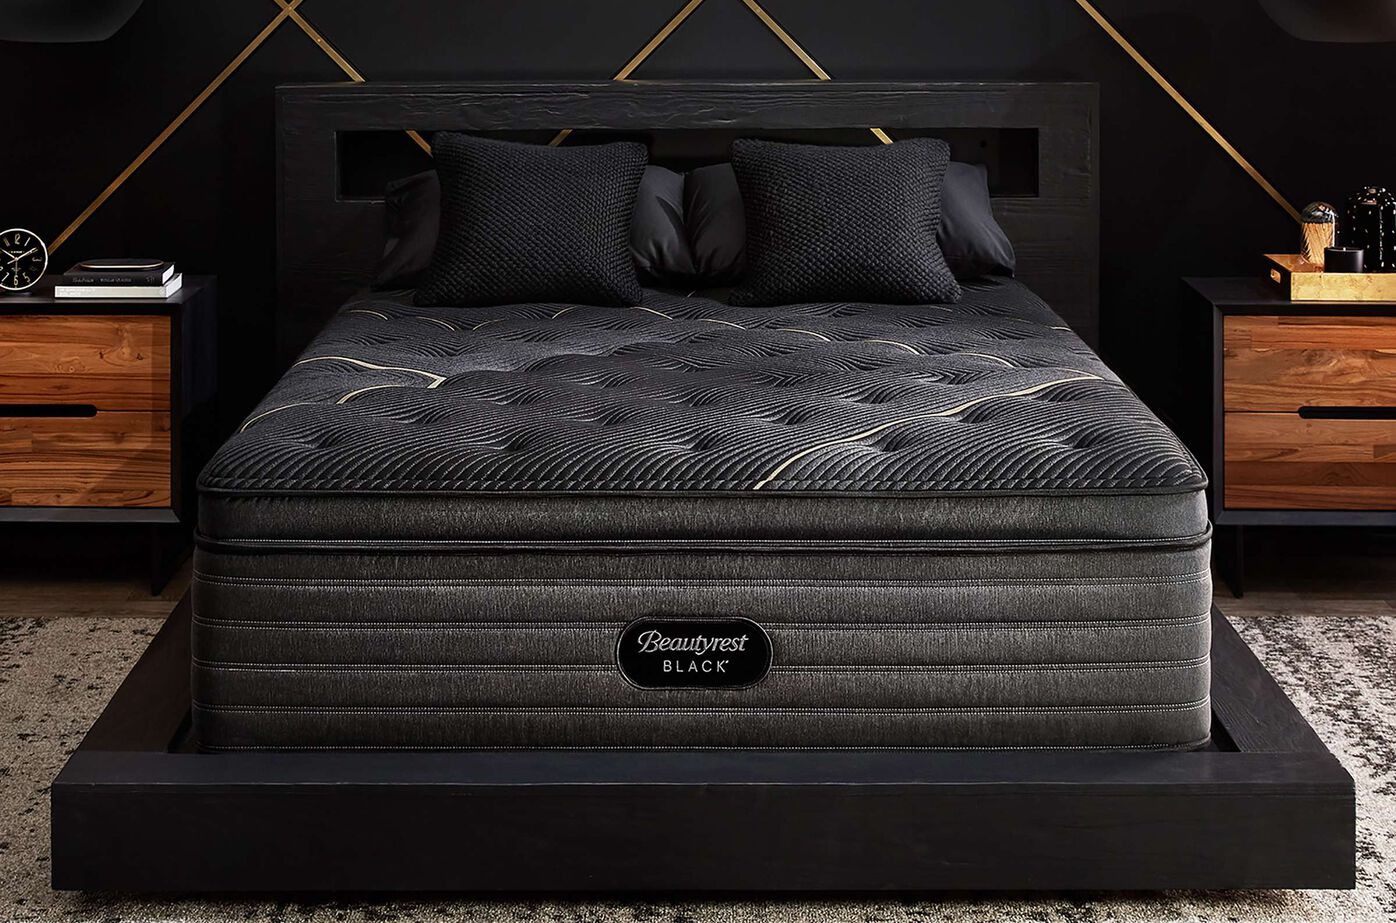 Beautyrest Black K-Class Firm Pillow Top Mattress 15.75" image number 0